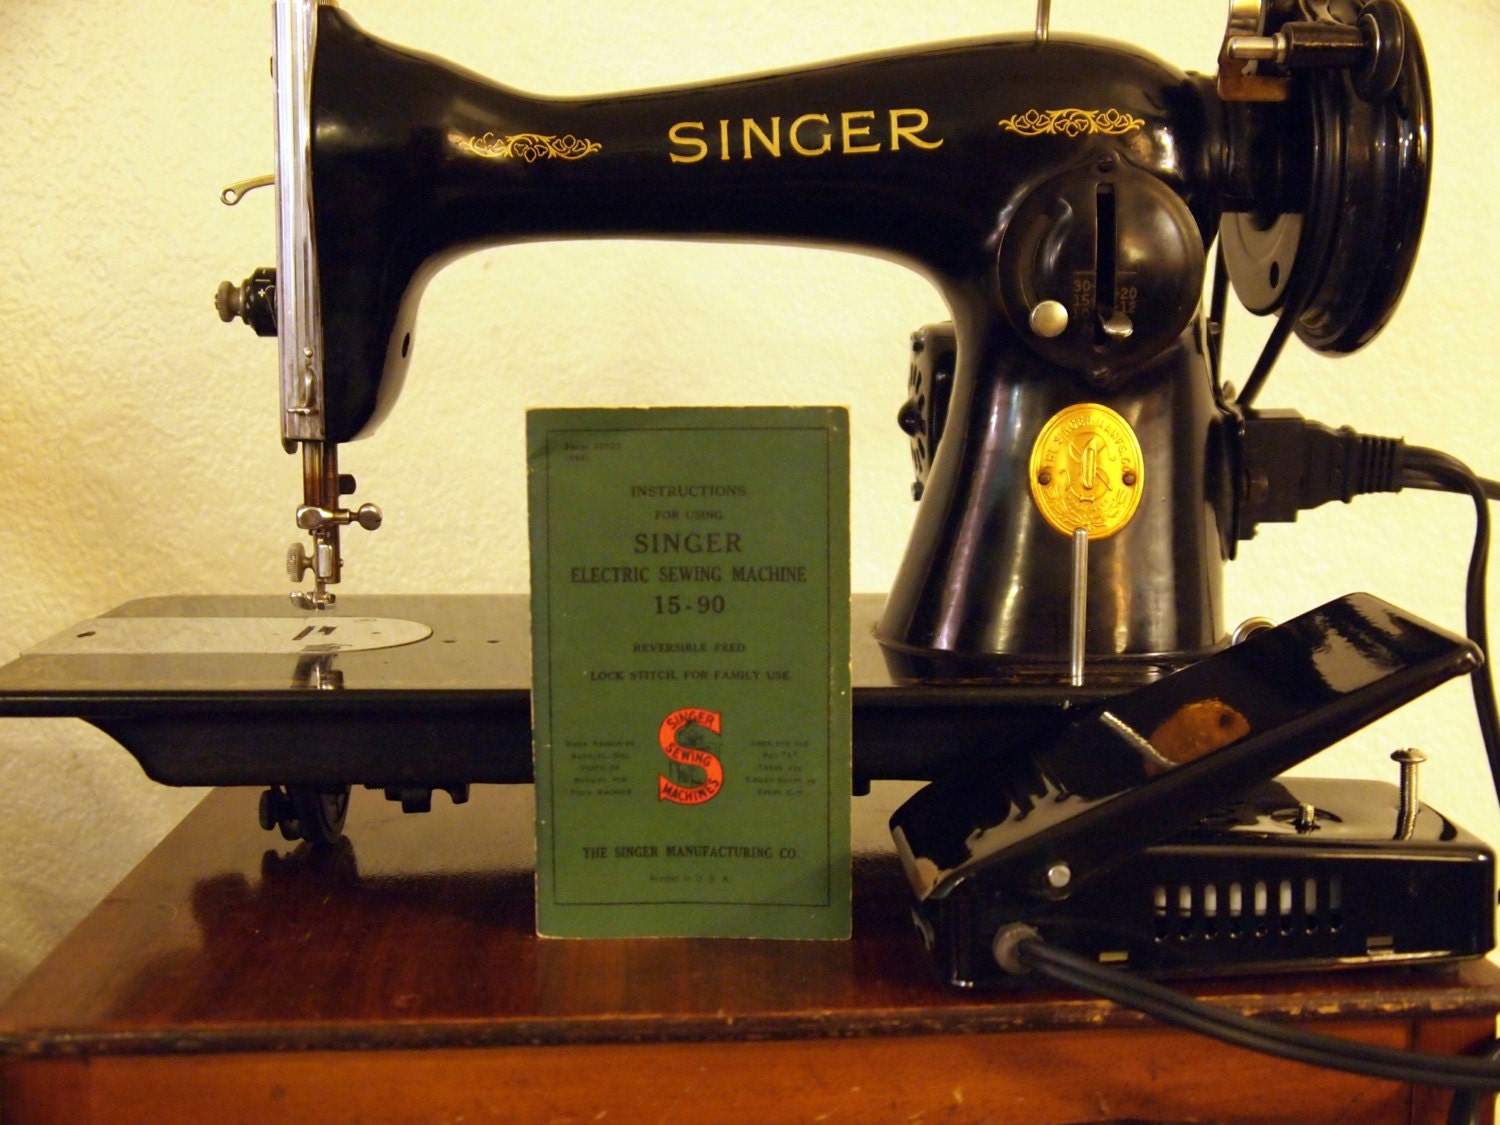 Singer 15-90 Sewing Machine - 1948